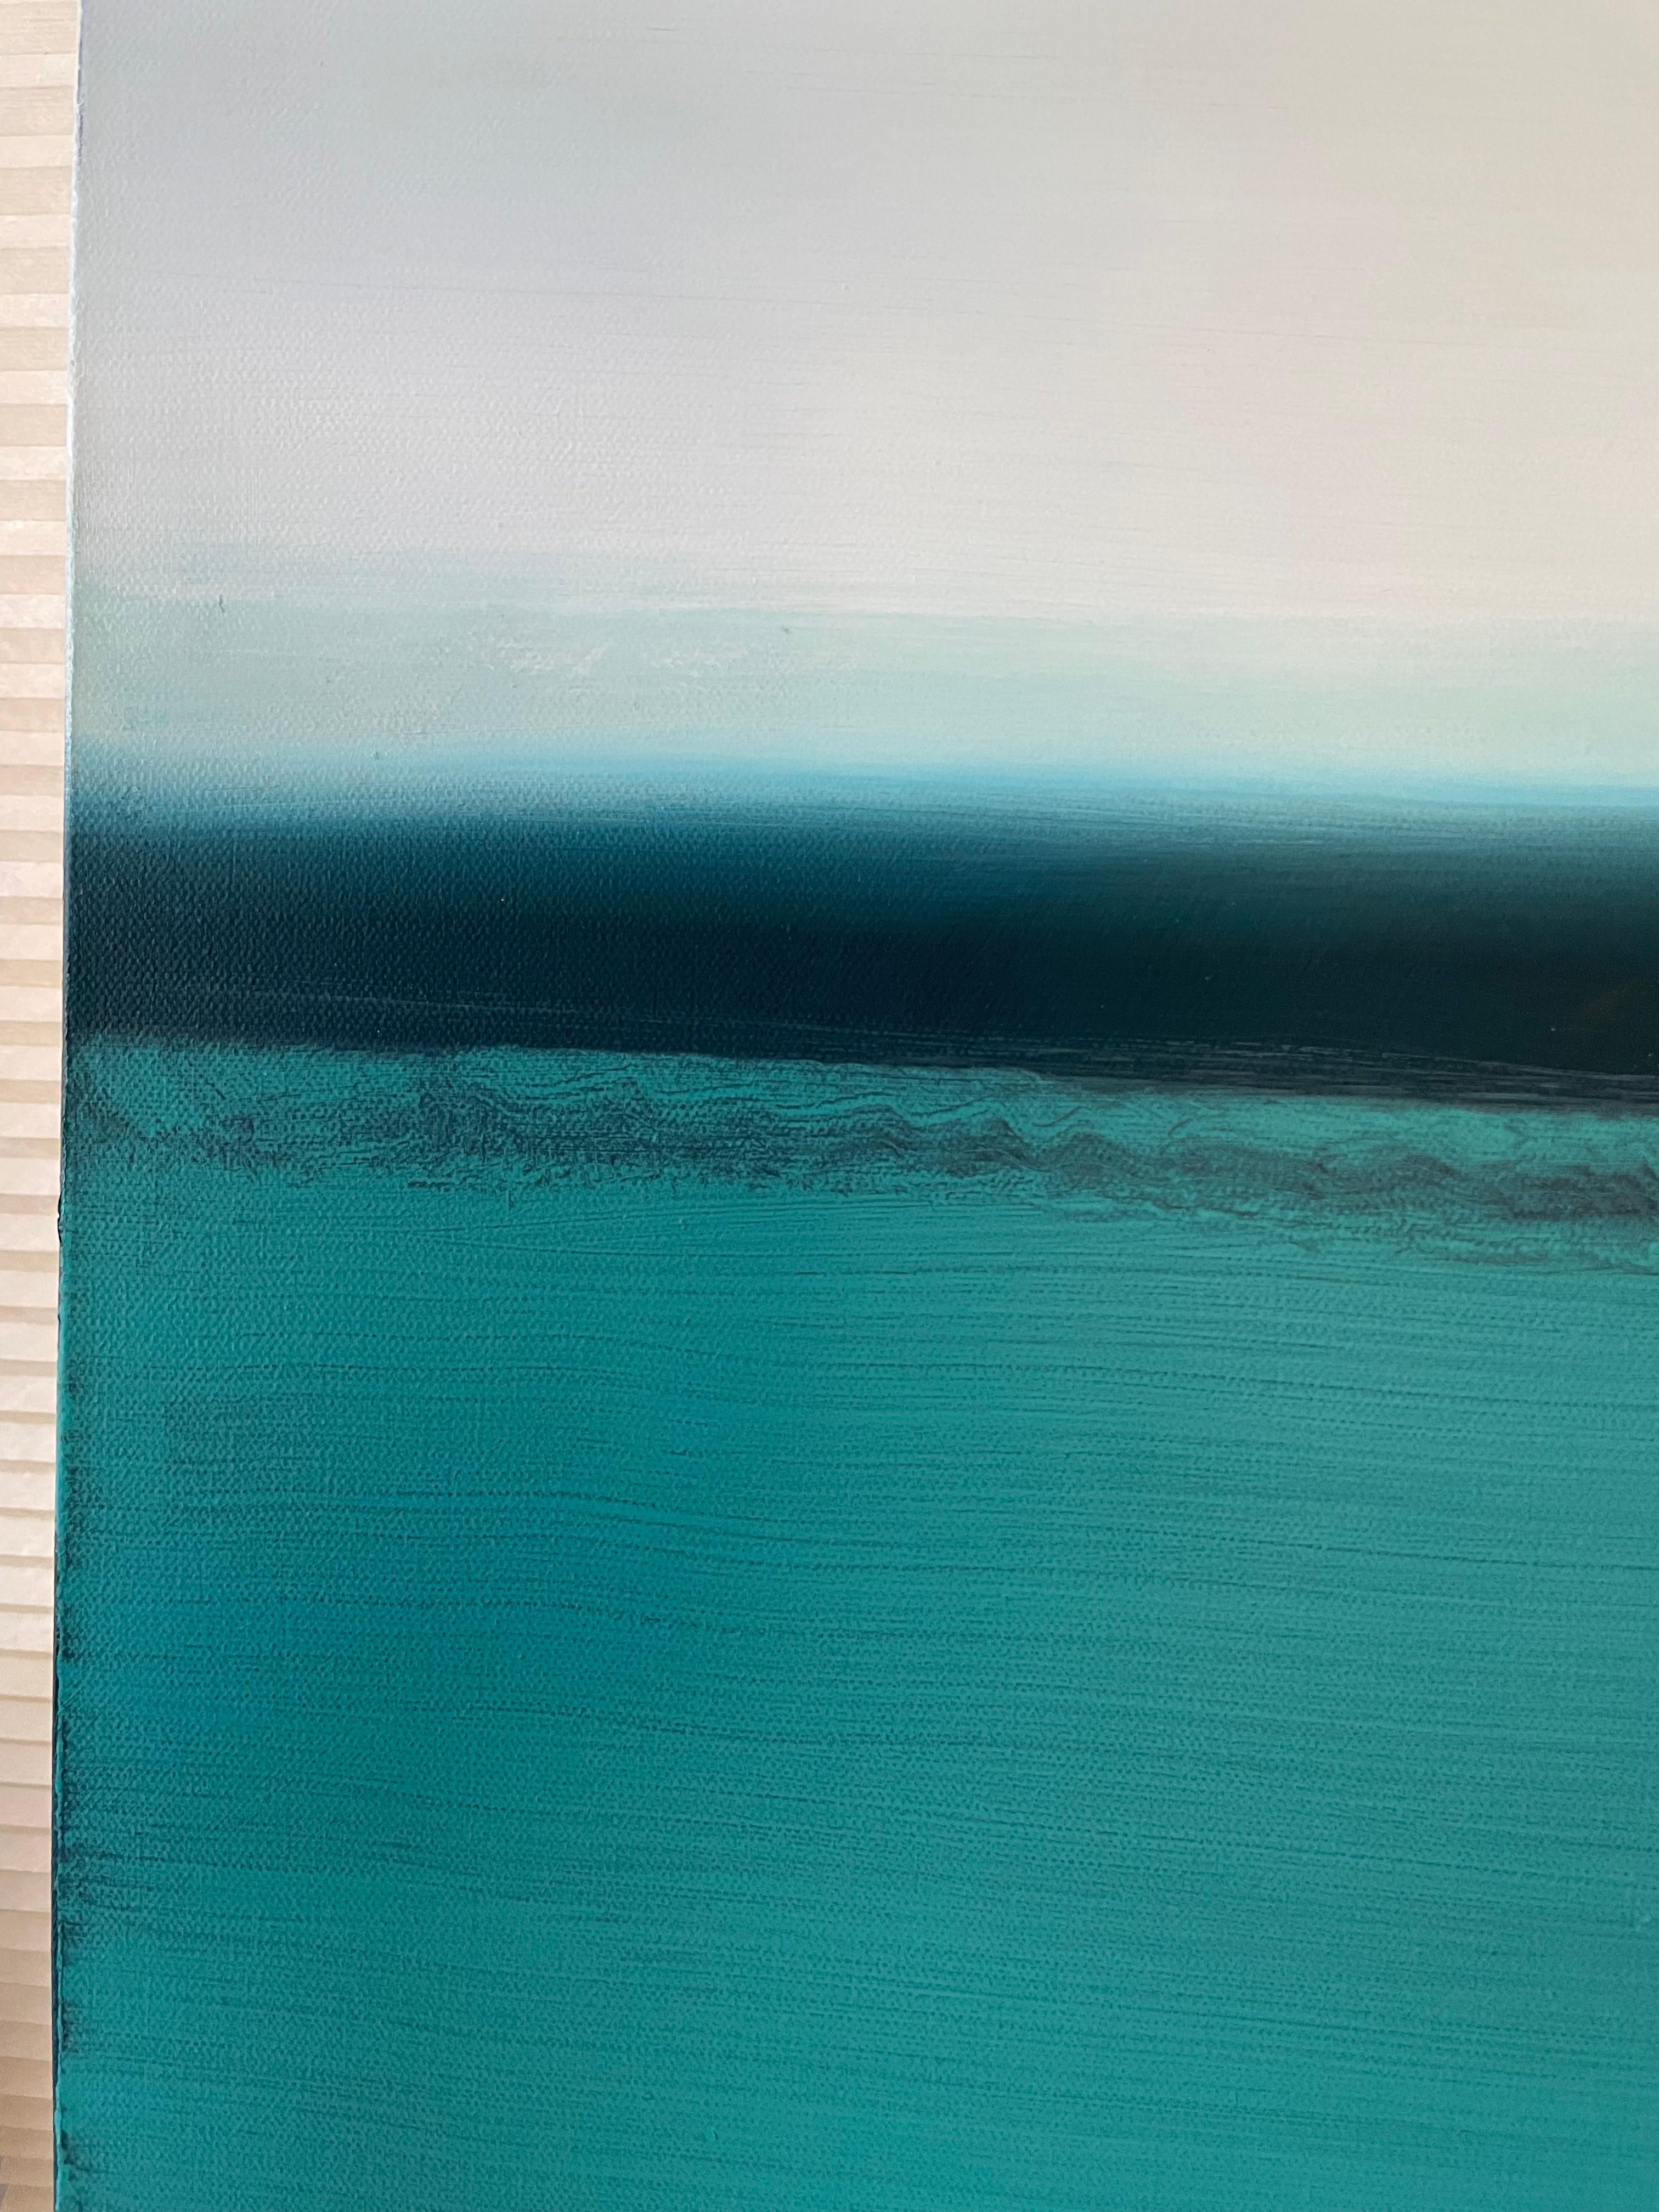 Peinture géométrique abstraite « River of Dreams » avec eau verte et ciel bleu - Abstrait Painting par Joseph McAleer